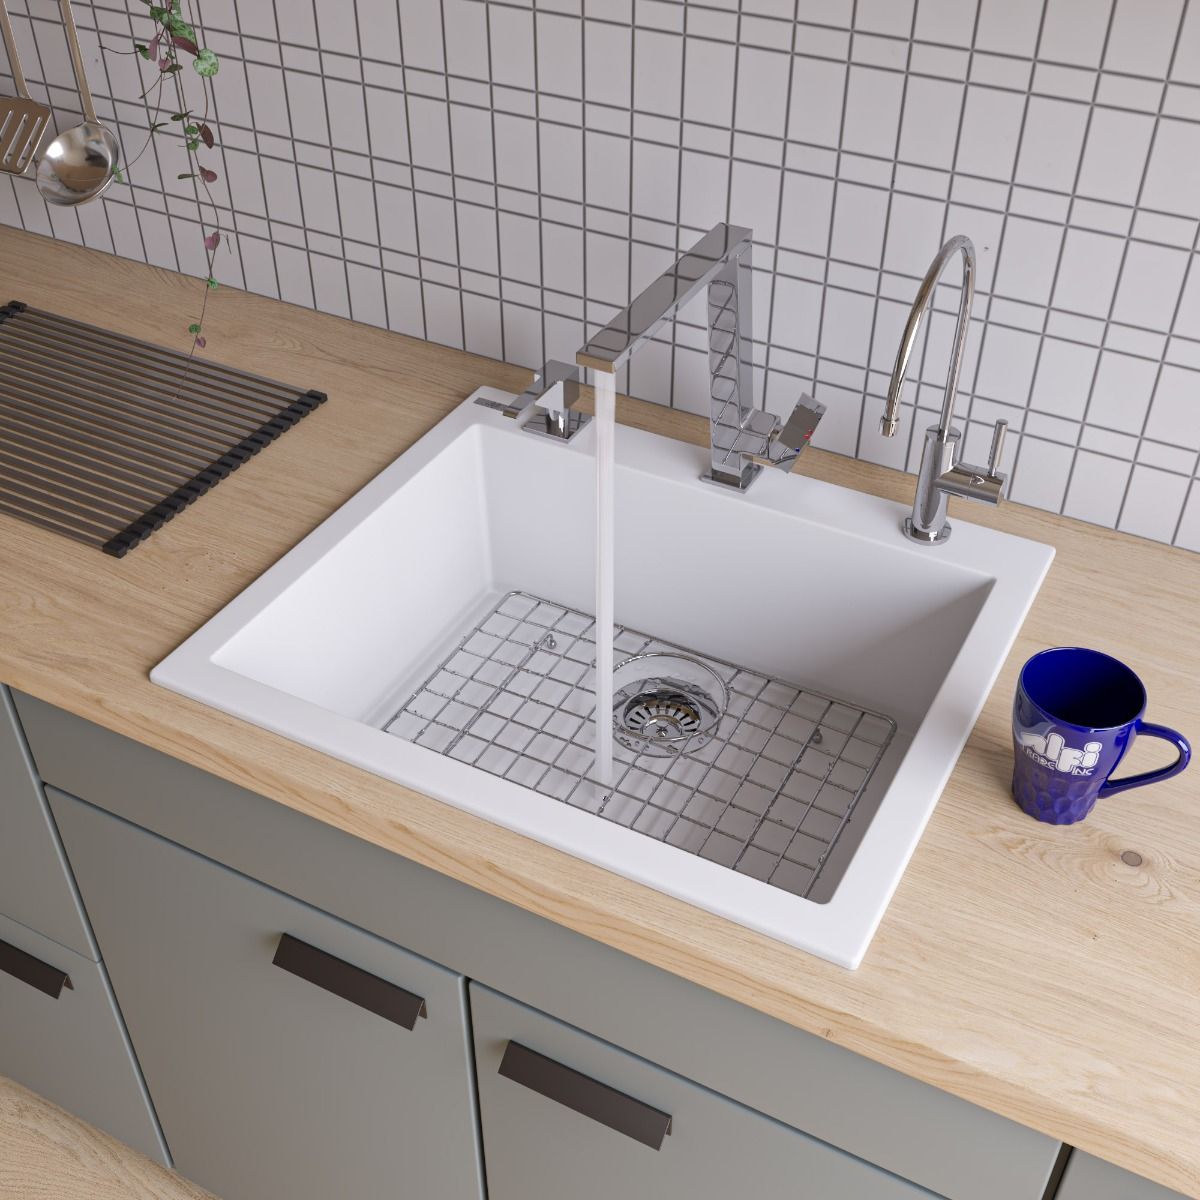 ALFI Brand AB2420DI-W White 24" Drop-In Single Bowl Granite Composite Kitchen Sink